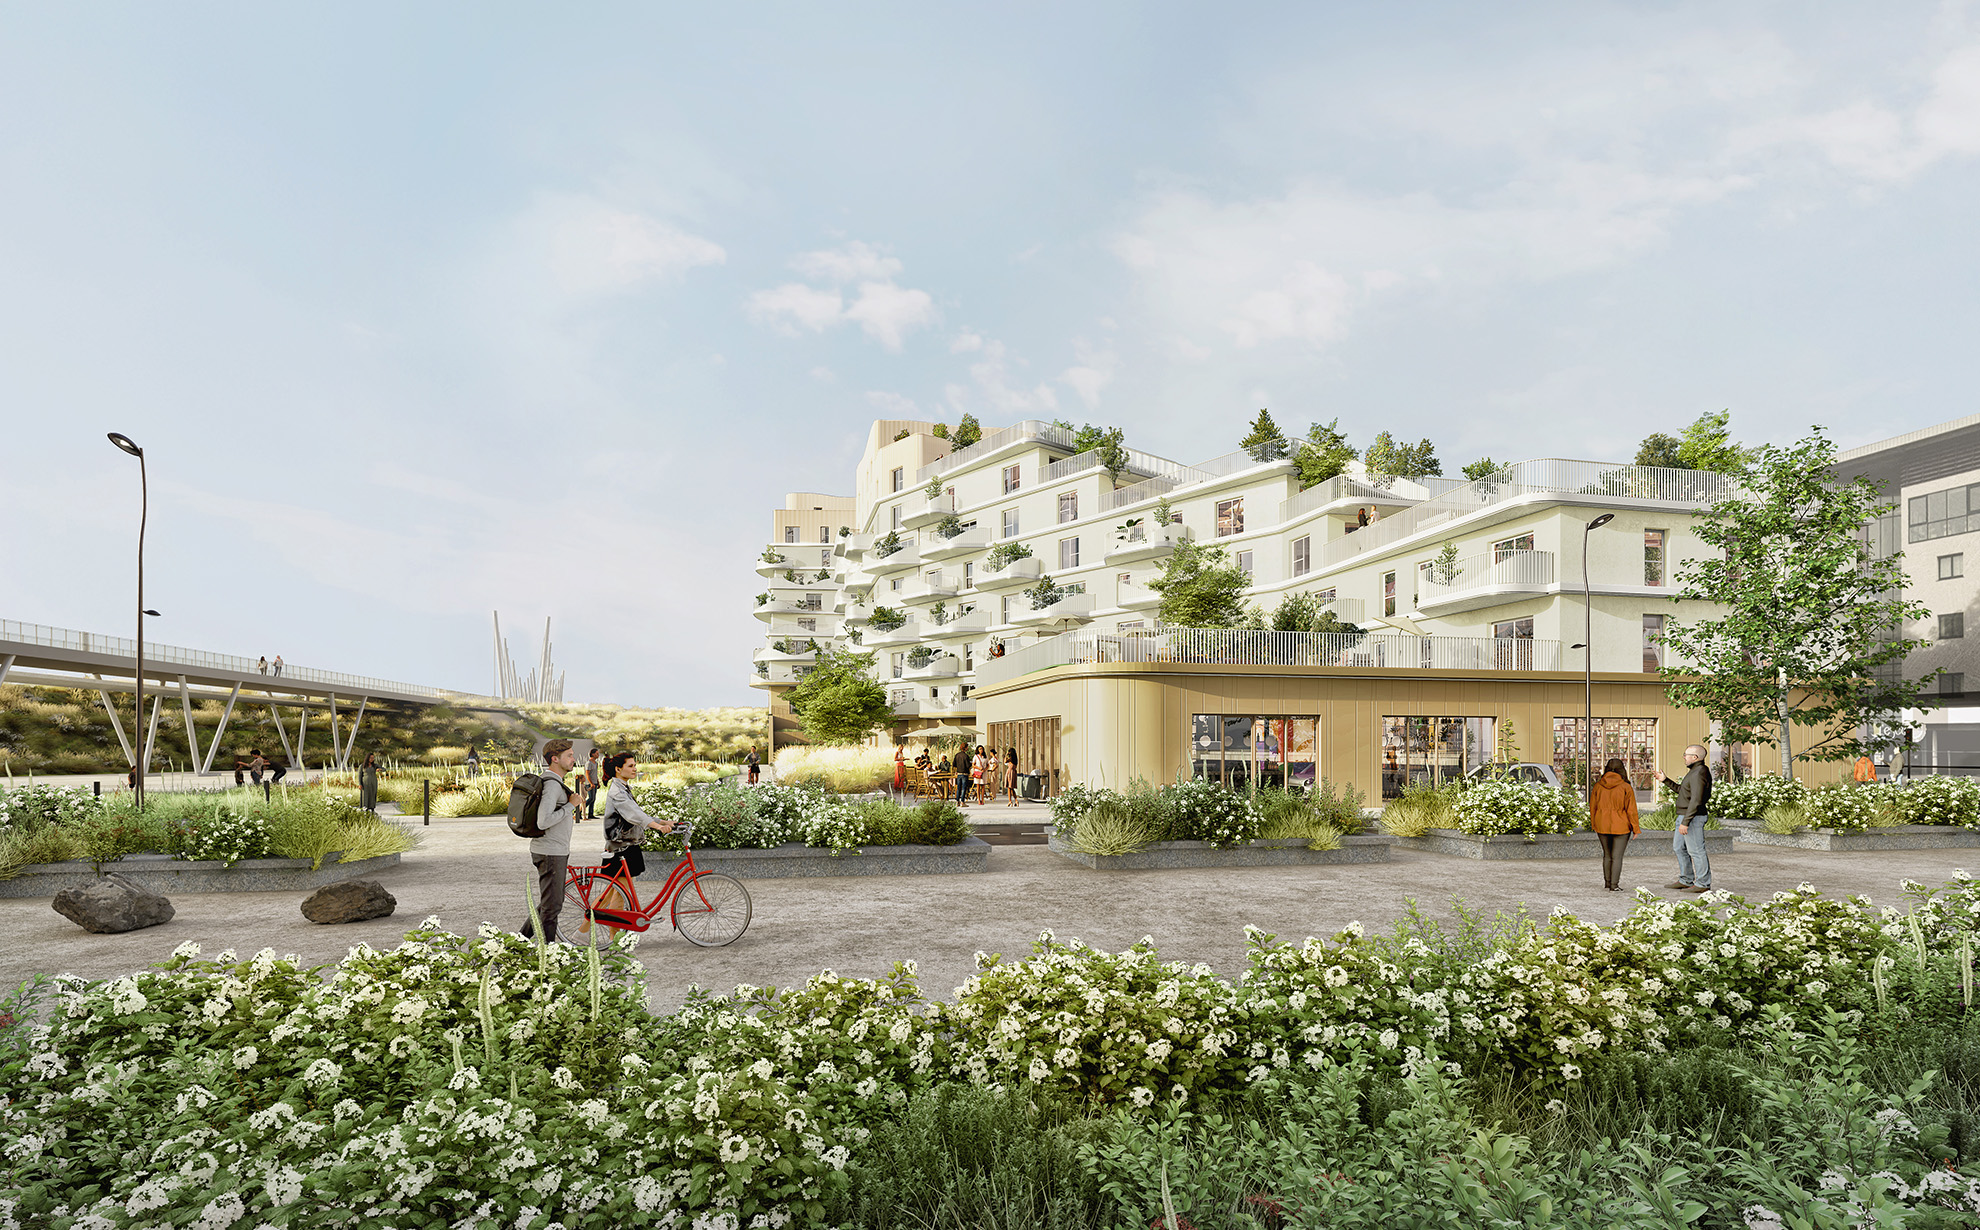 Image 3d d'un immeuble de logements clair en épannelage avec un commerce, un pont et un environnement très végétal.